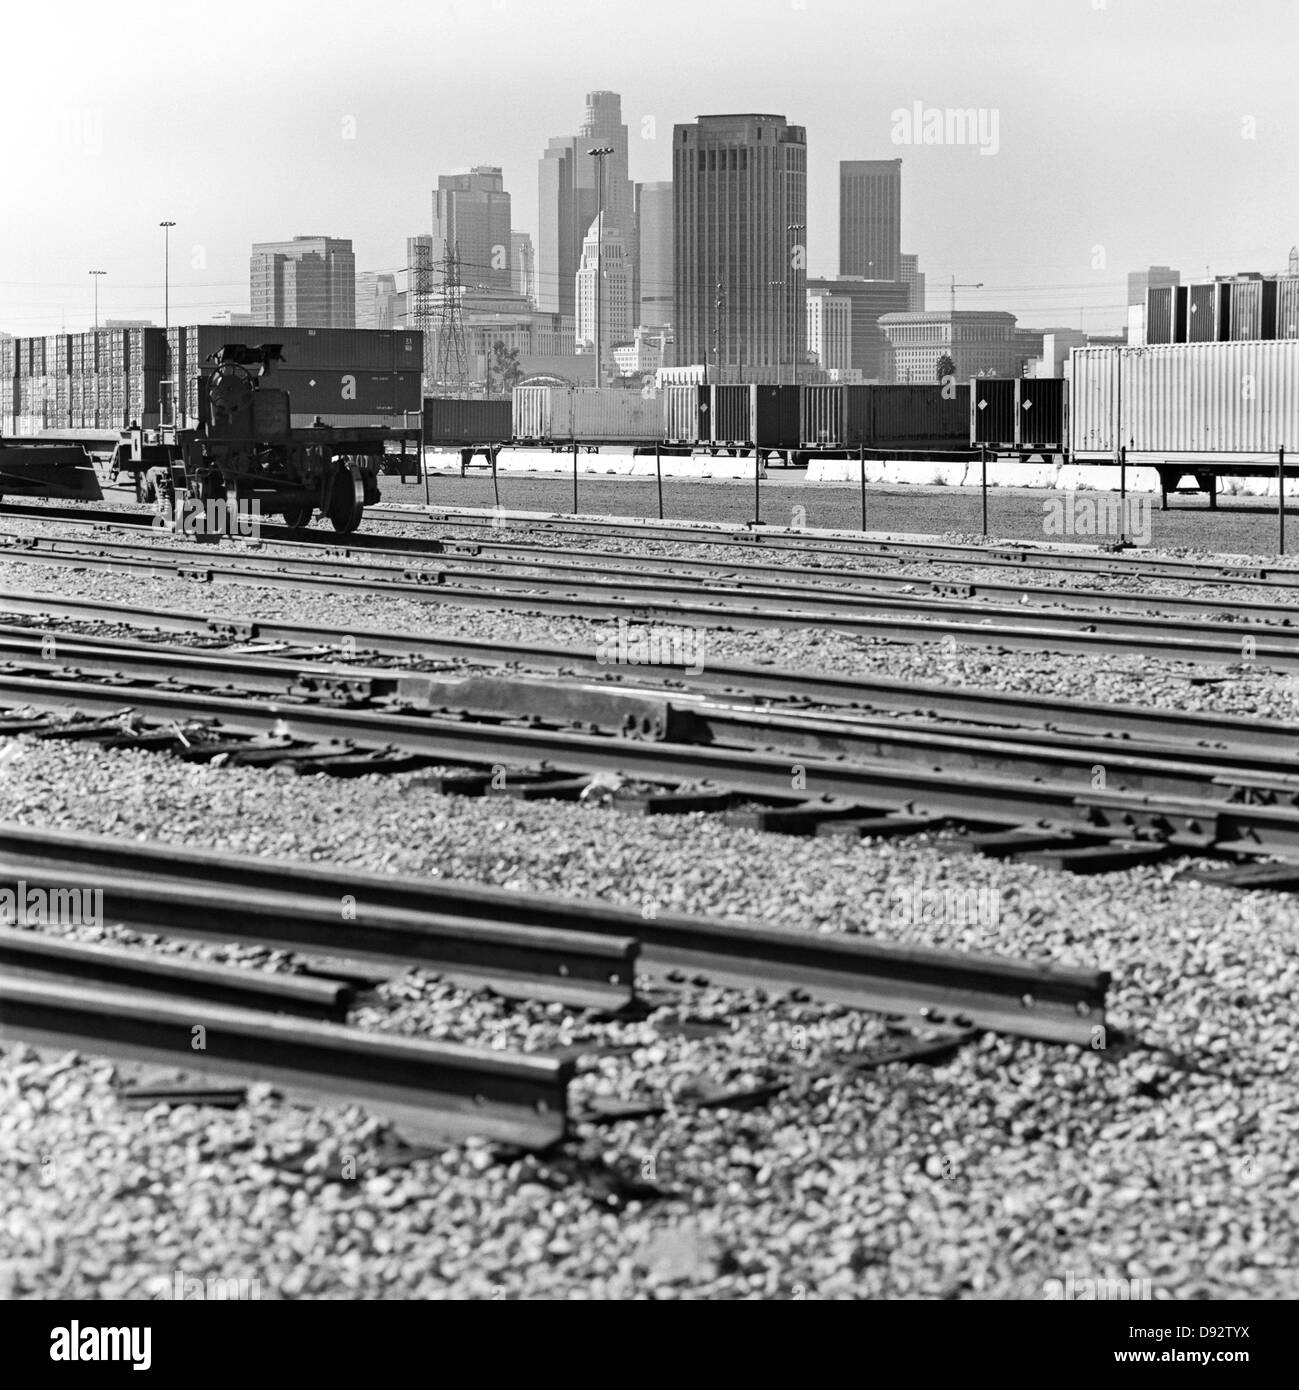 Les voies ferrées, les conteneurs de fret et gratte-ciel de Los Angeles, Californie, USA Banque D'Images